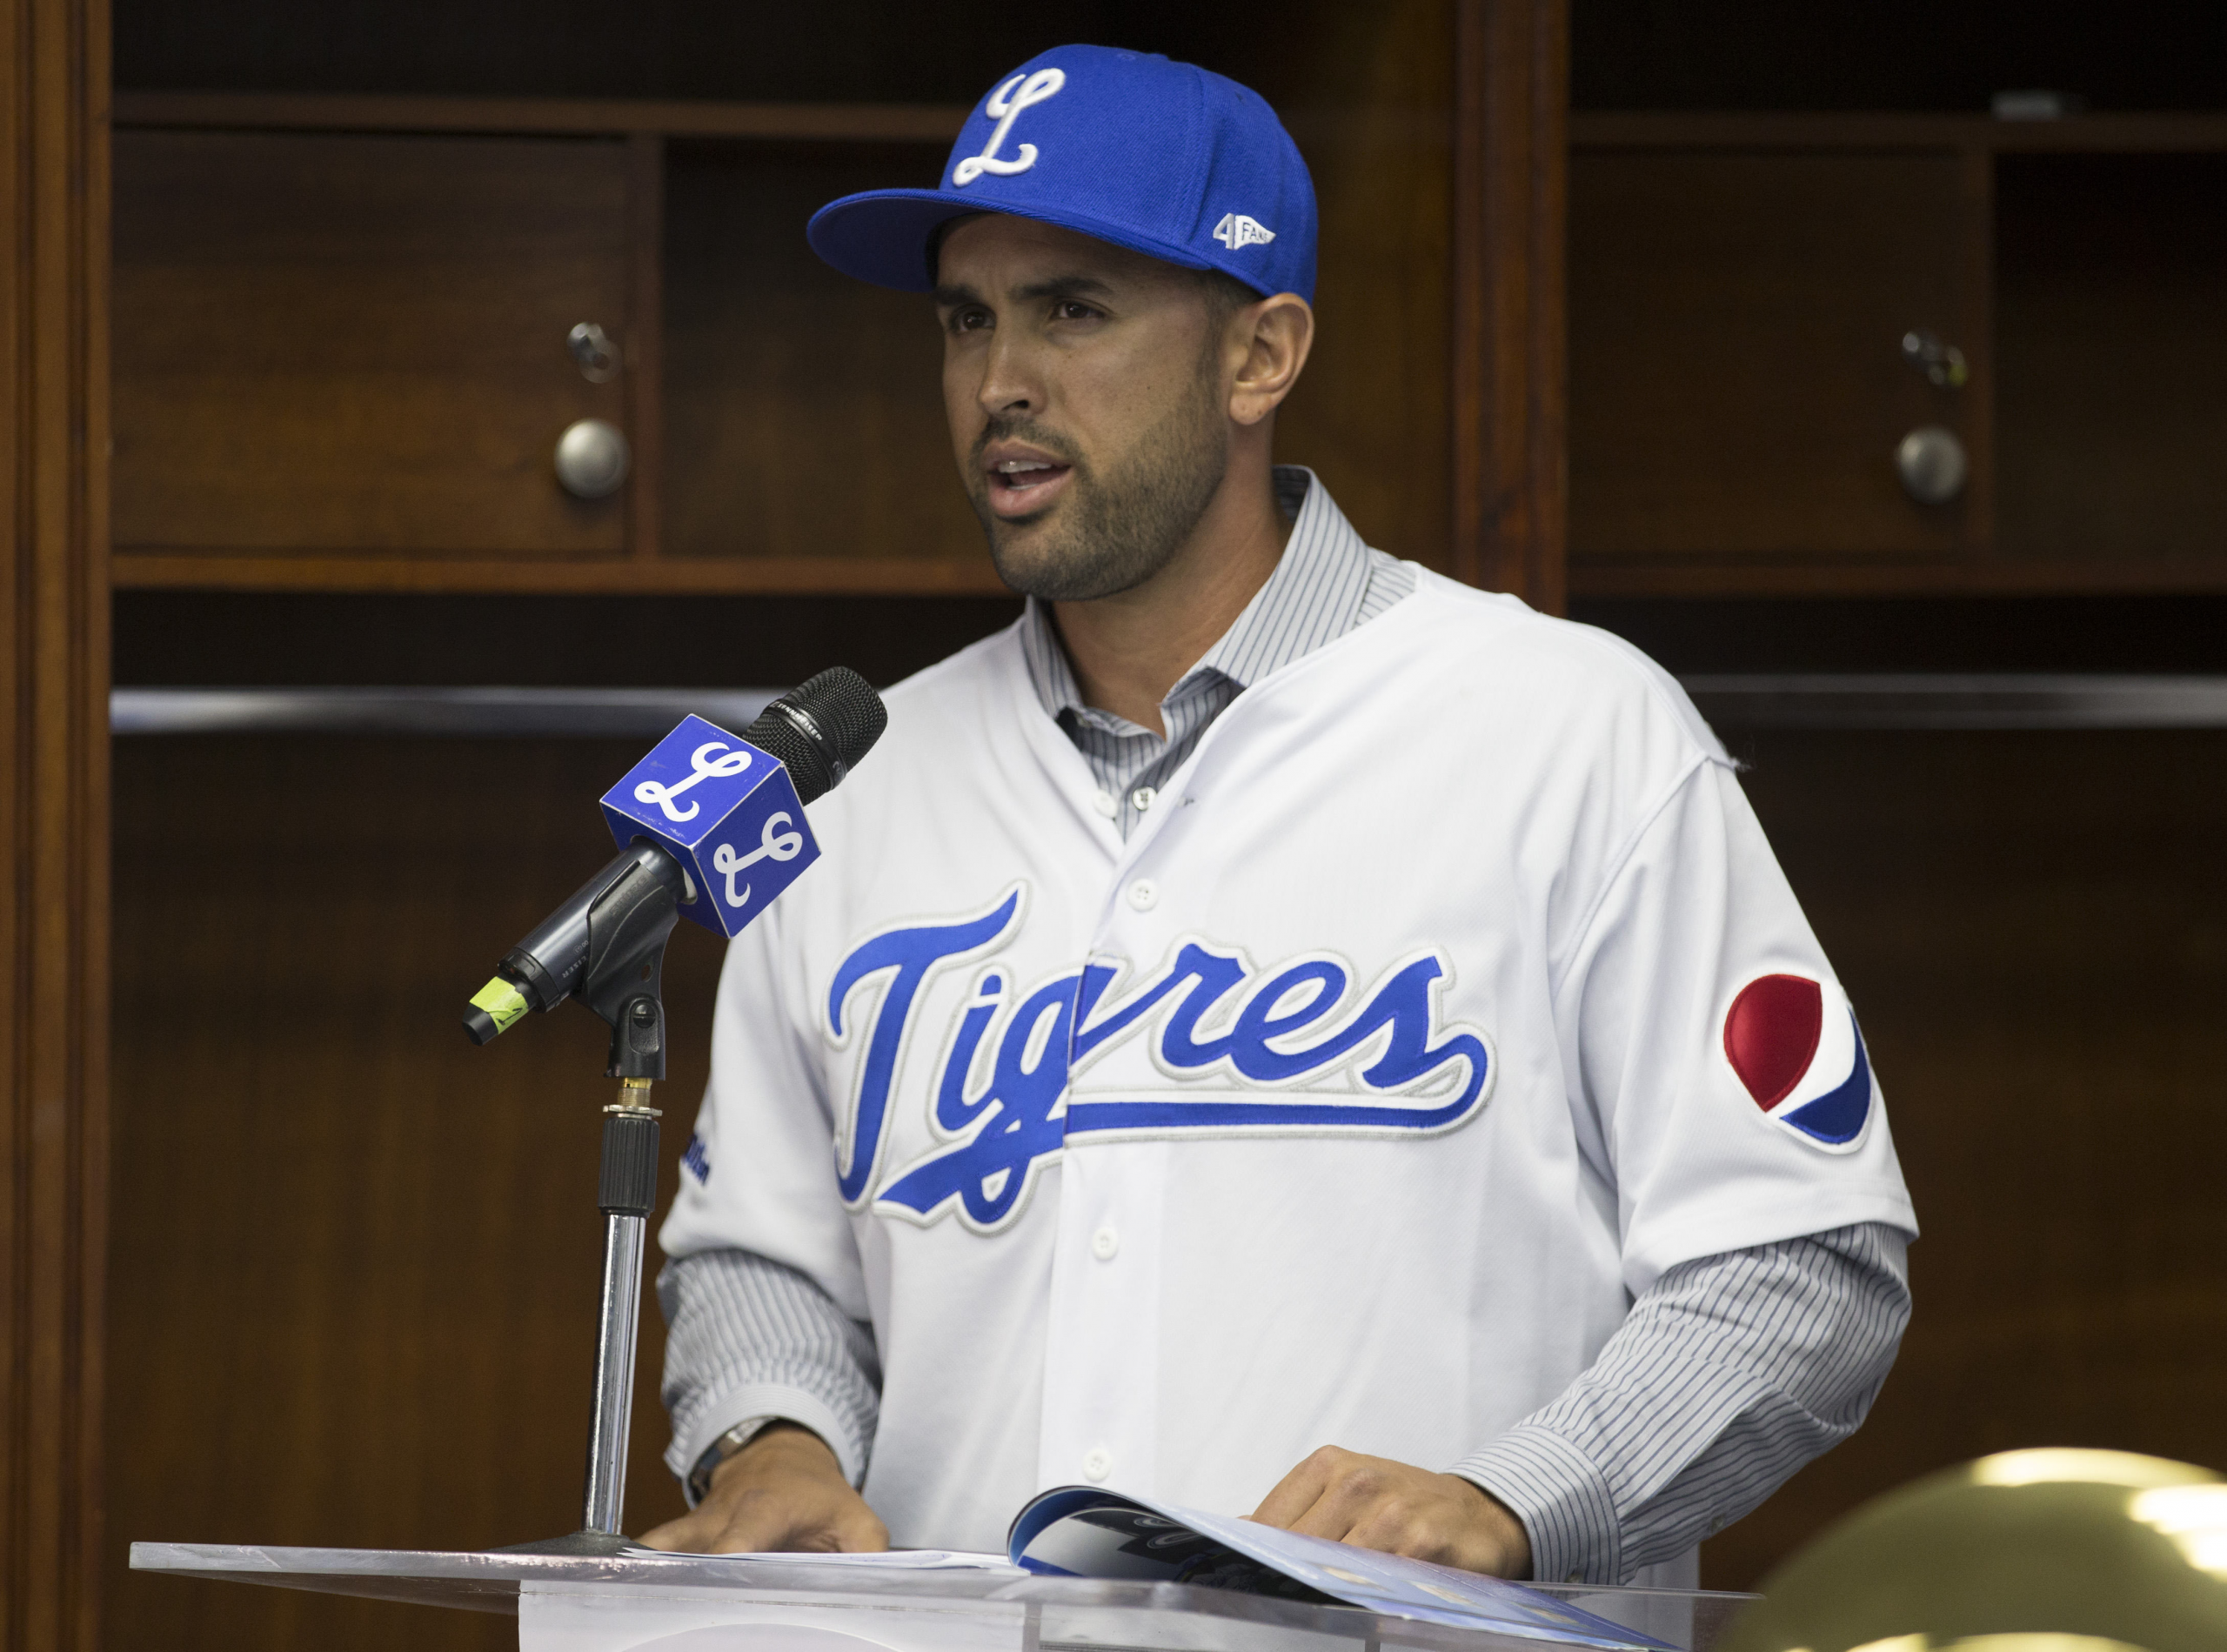 wp image 5840 scaled - Tigres del Licey, campeón del béisbol dominicano, elige nuevo presidente